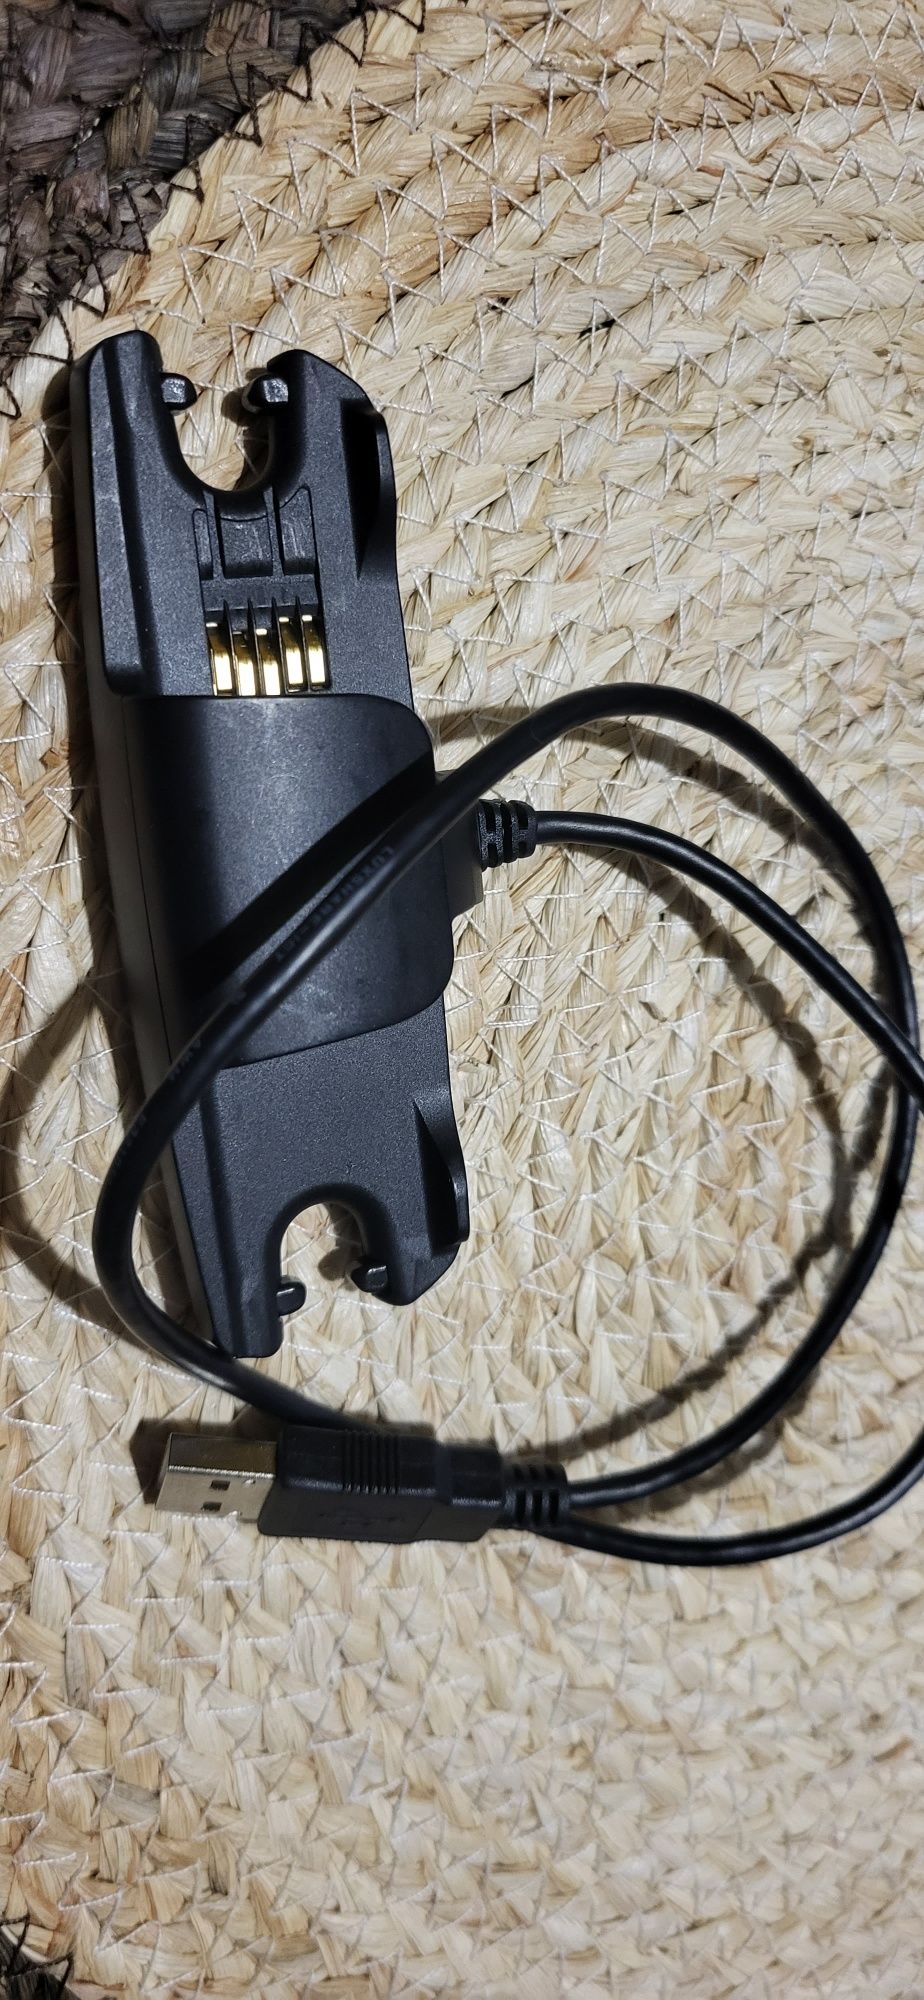 Przewód zasilający, kabel, ładowarka do MP3 Sony NWZ—WS613 / 615